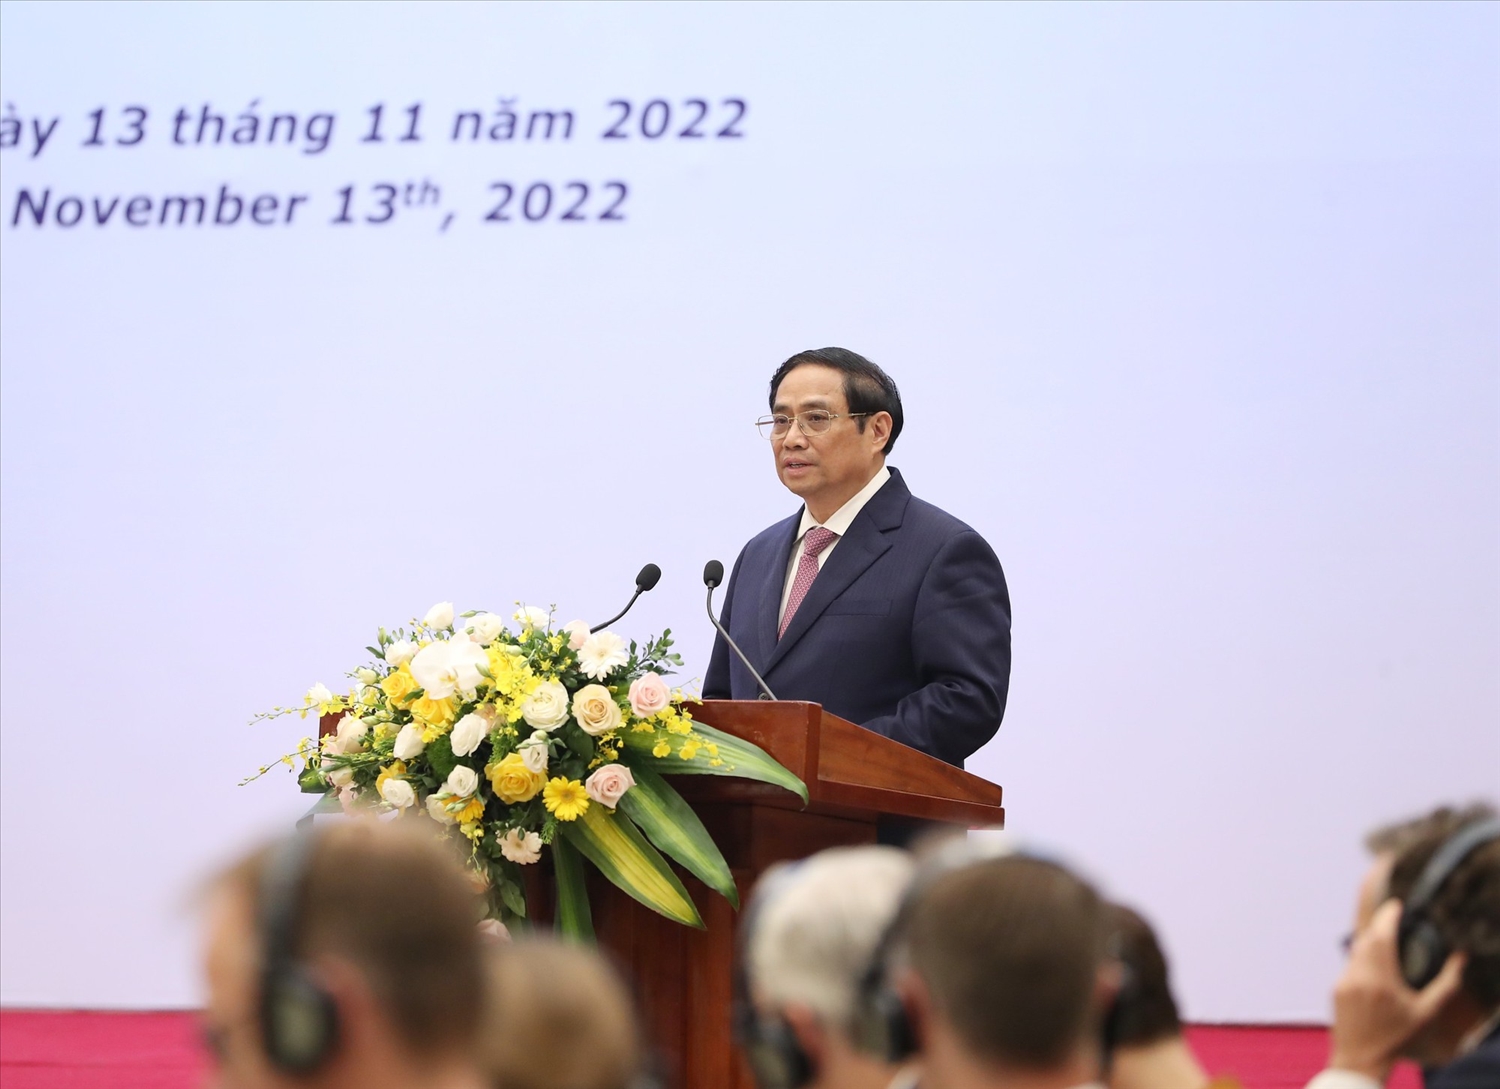 Theo Thủ tướng Phạm Minh Chính, kết quả hợp tác kinh tế giữa hai bên những năm qua là đáng khích lệ nhưng vẫn chưa tương xứng với tiềm năng - Ảnh: VGP/Nhật Bắc